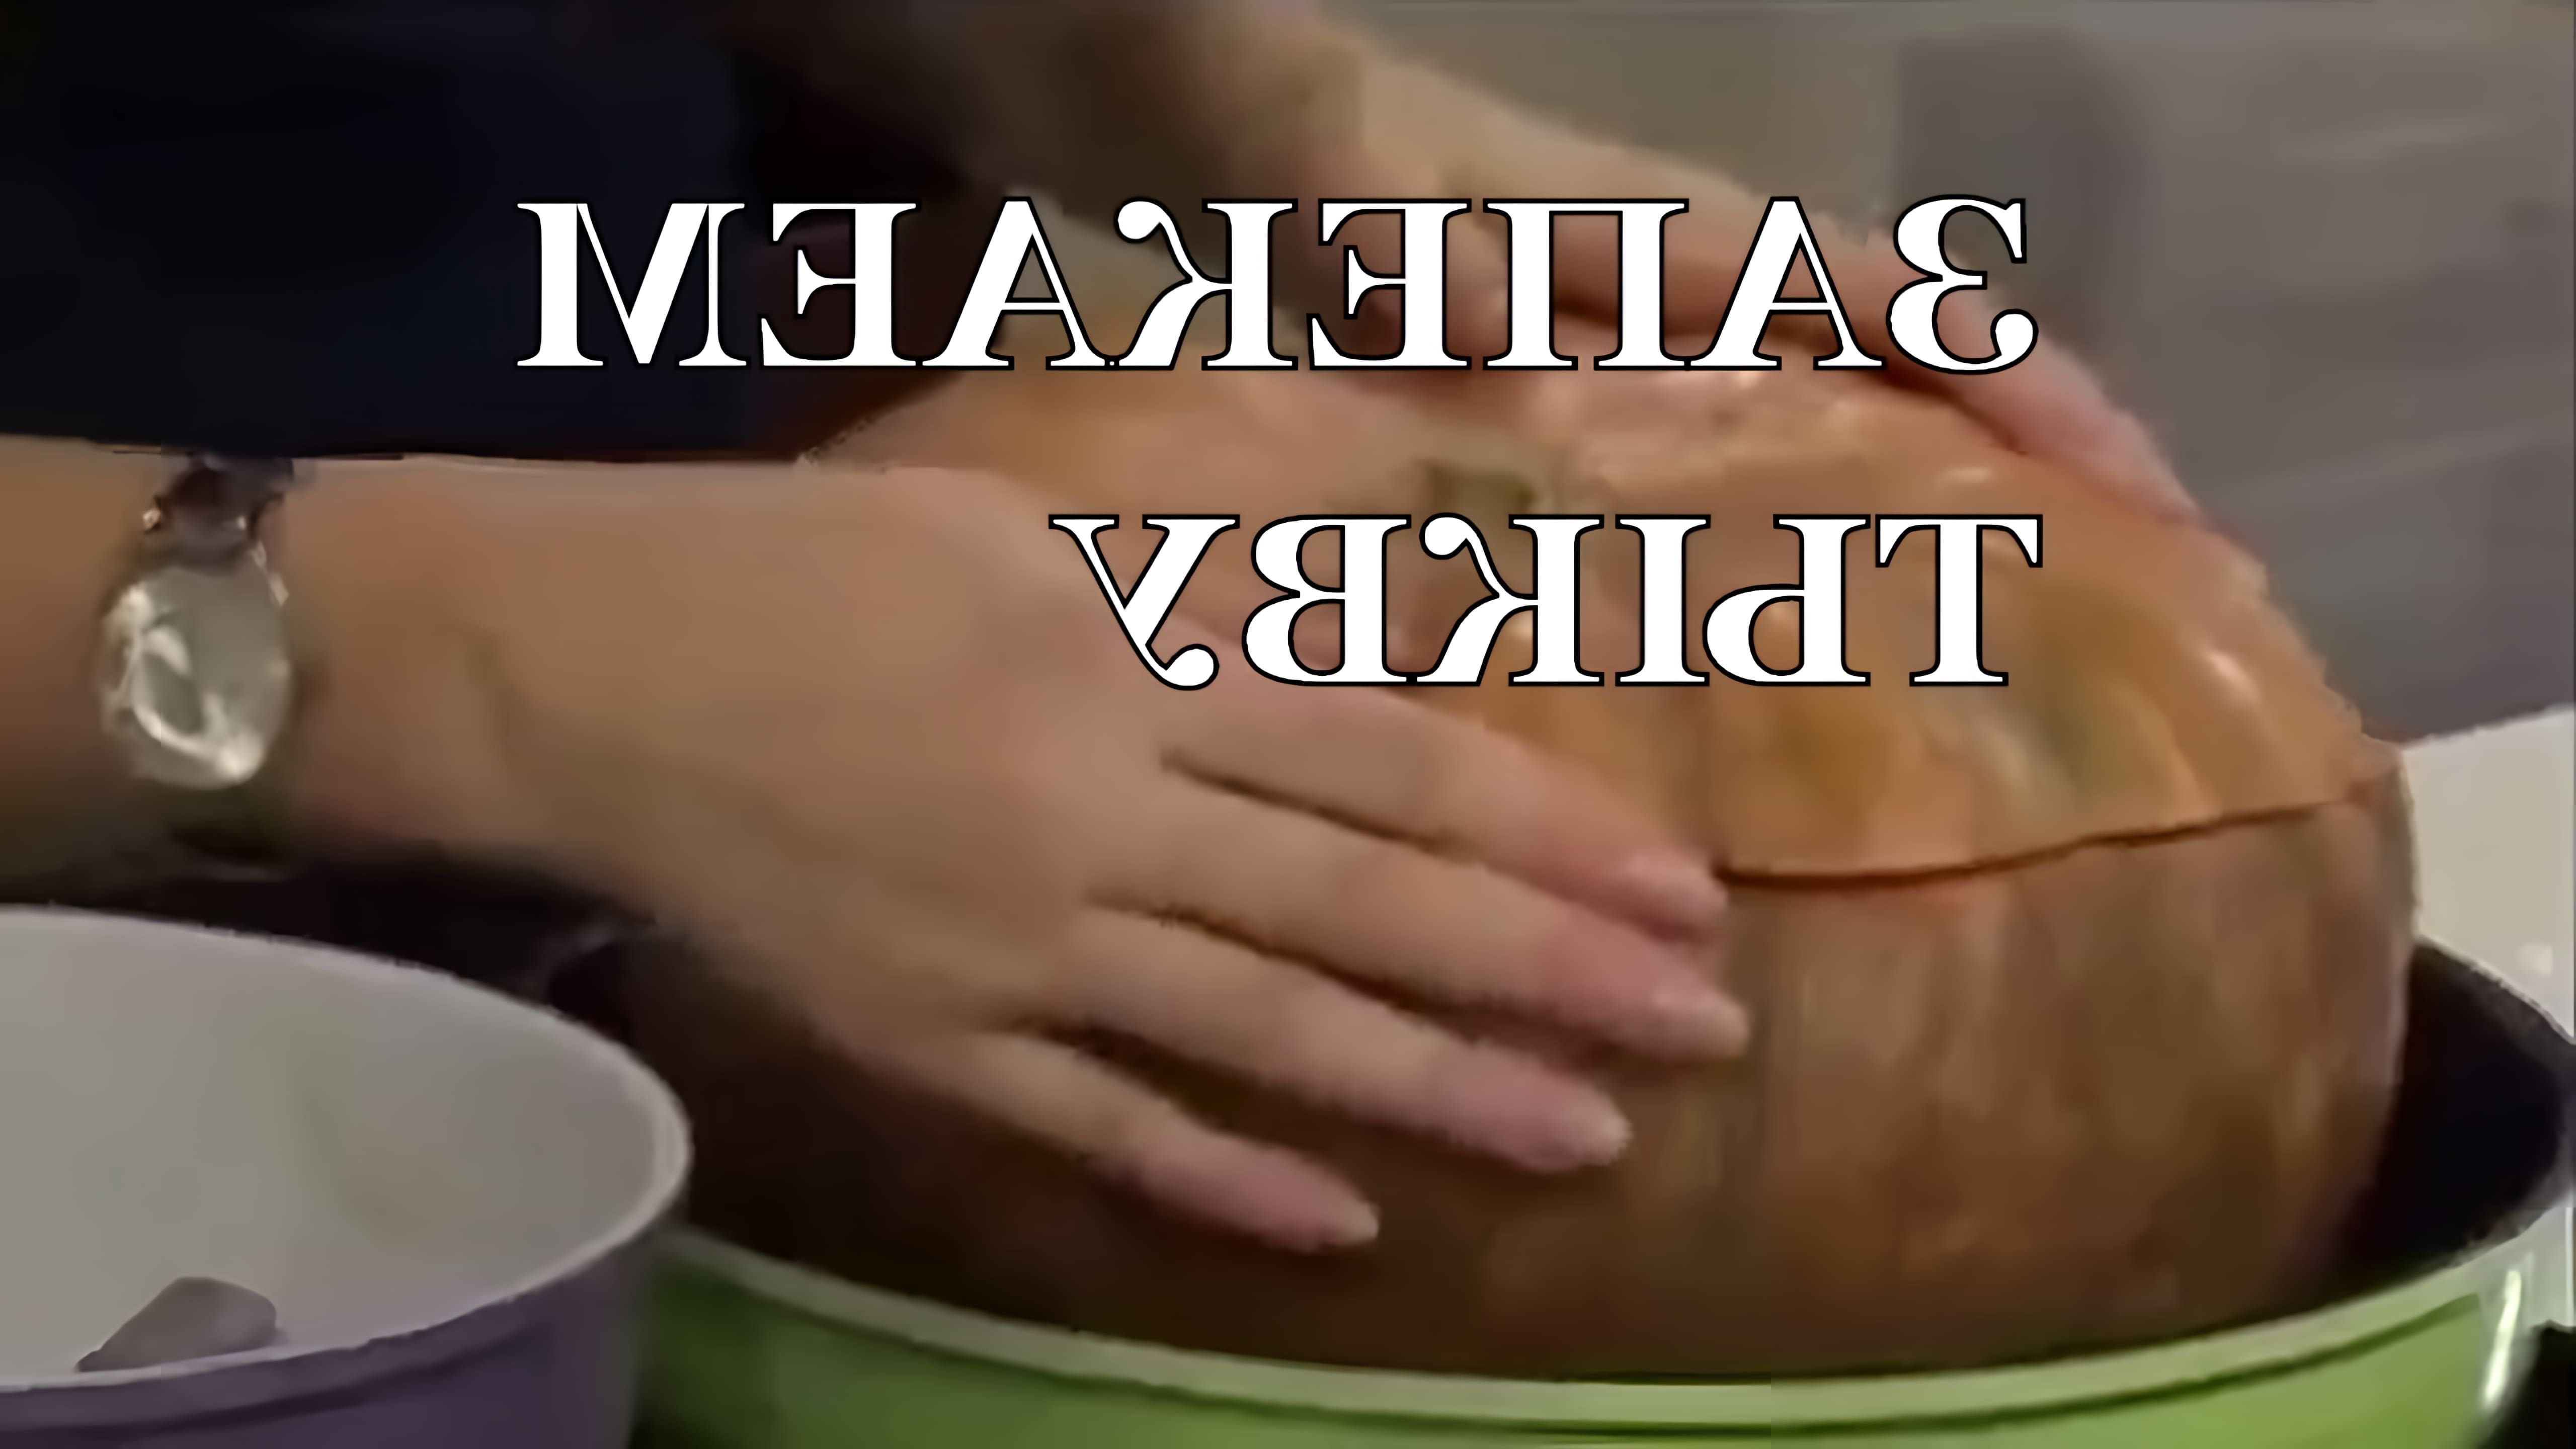 В этом видео показано, как запечь тыкву целиком в духовке